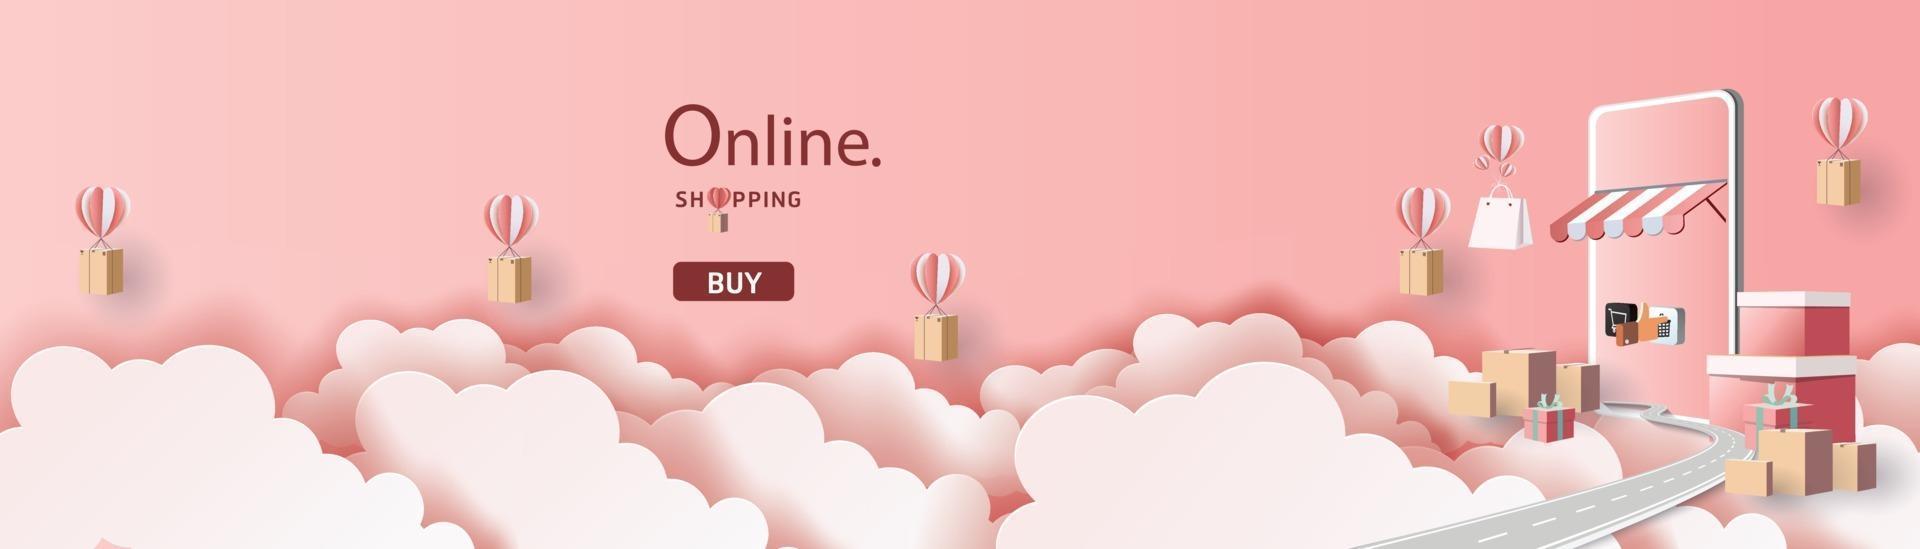 banner de venda para compras online no smartphone vetor